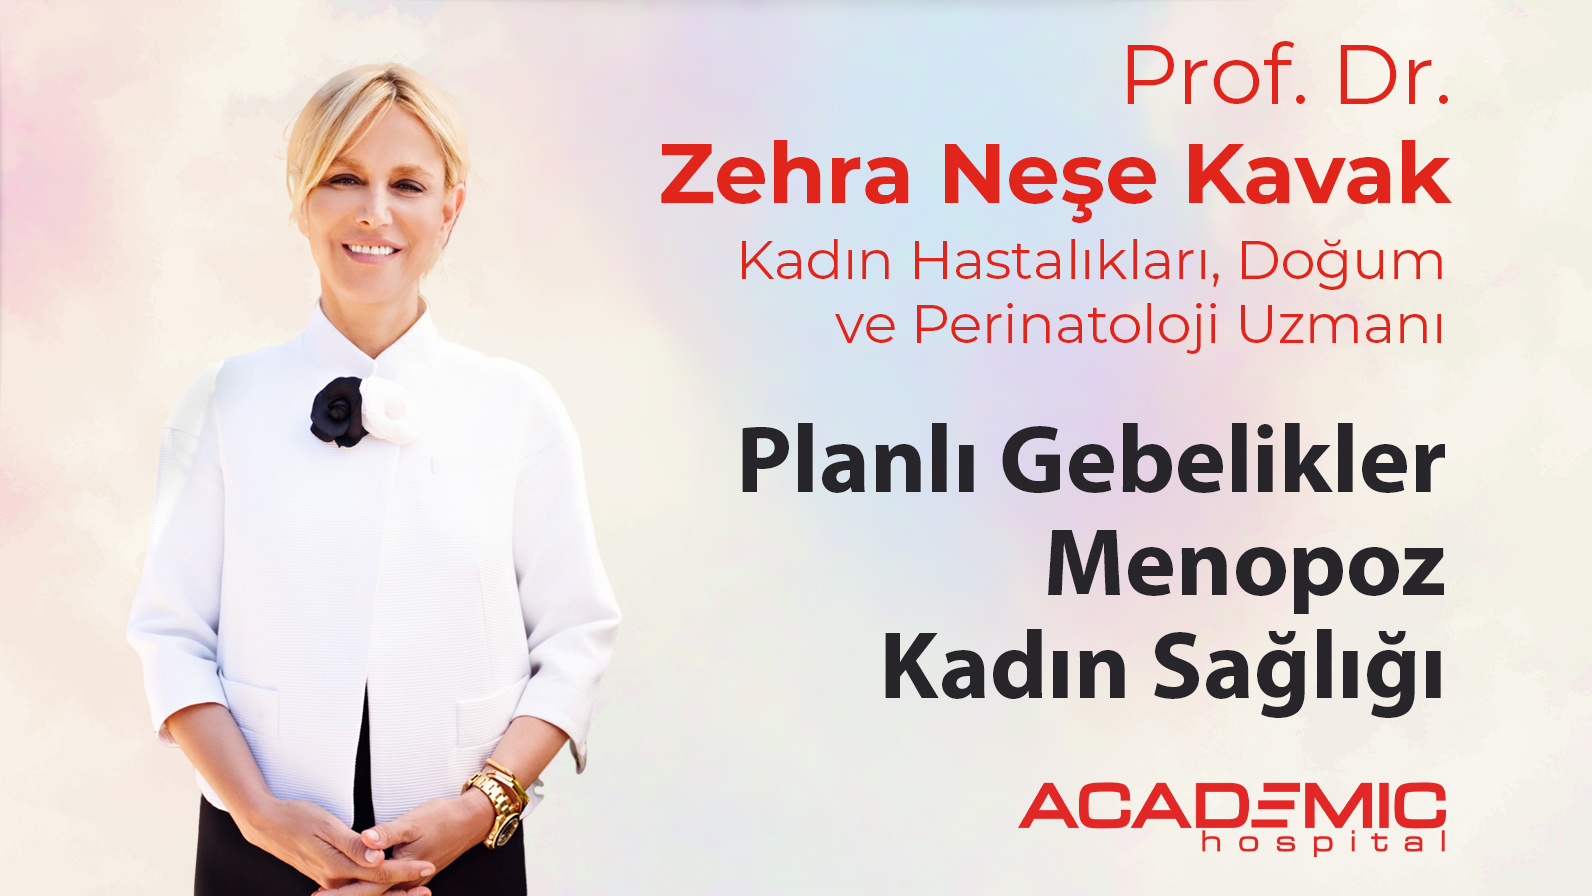 Prof. Dr. Zehra Neşe Kavak Planlı Gebelikler, Menopoz ve Kadın Sağlığı ile İlgili Soruları Yanıtladı.